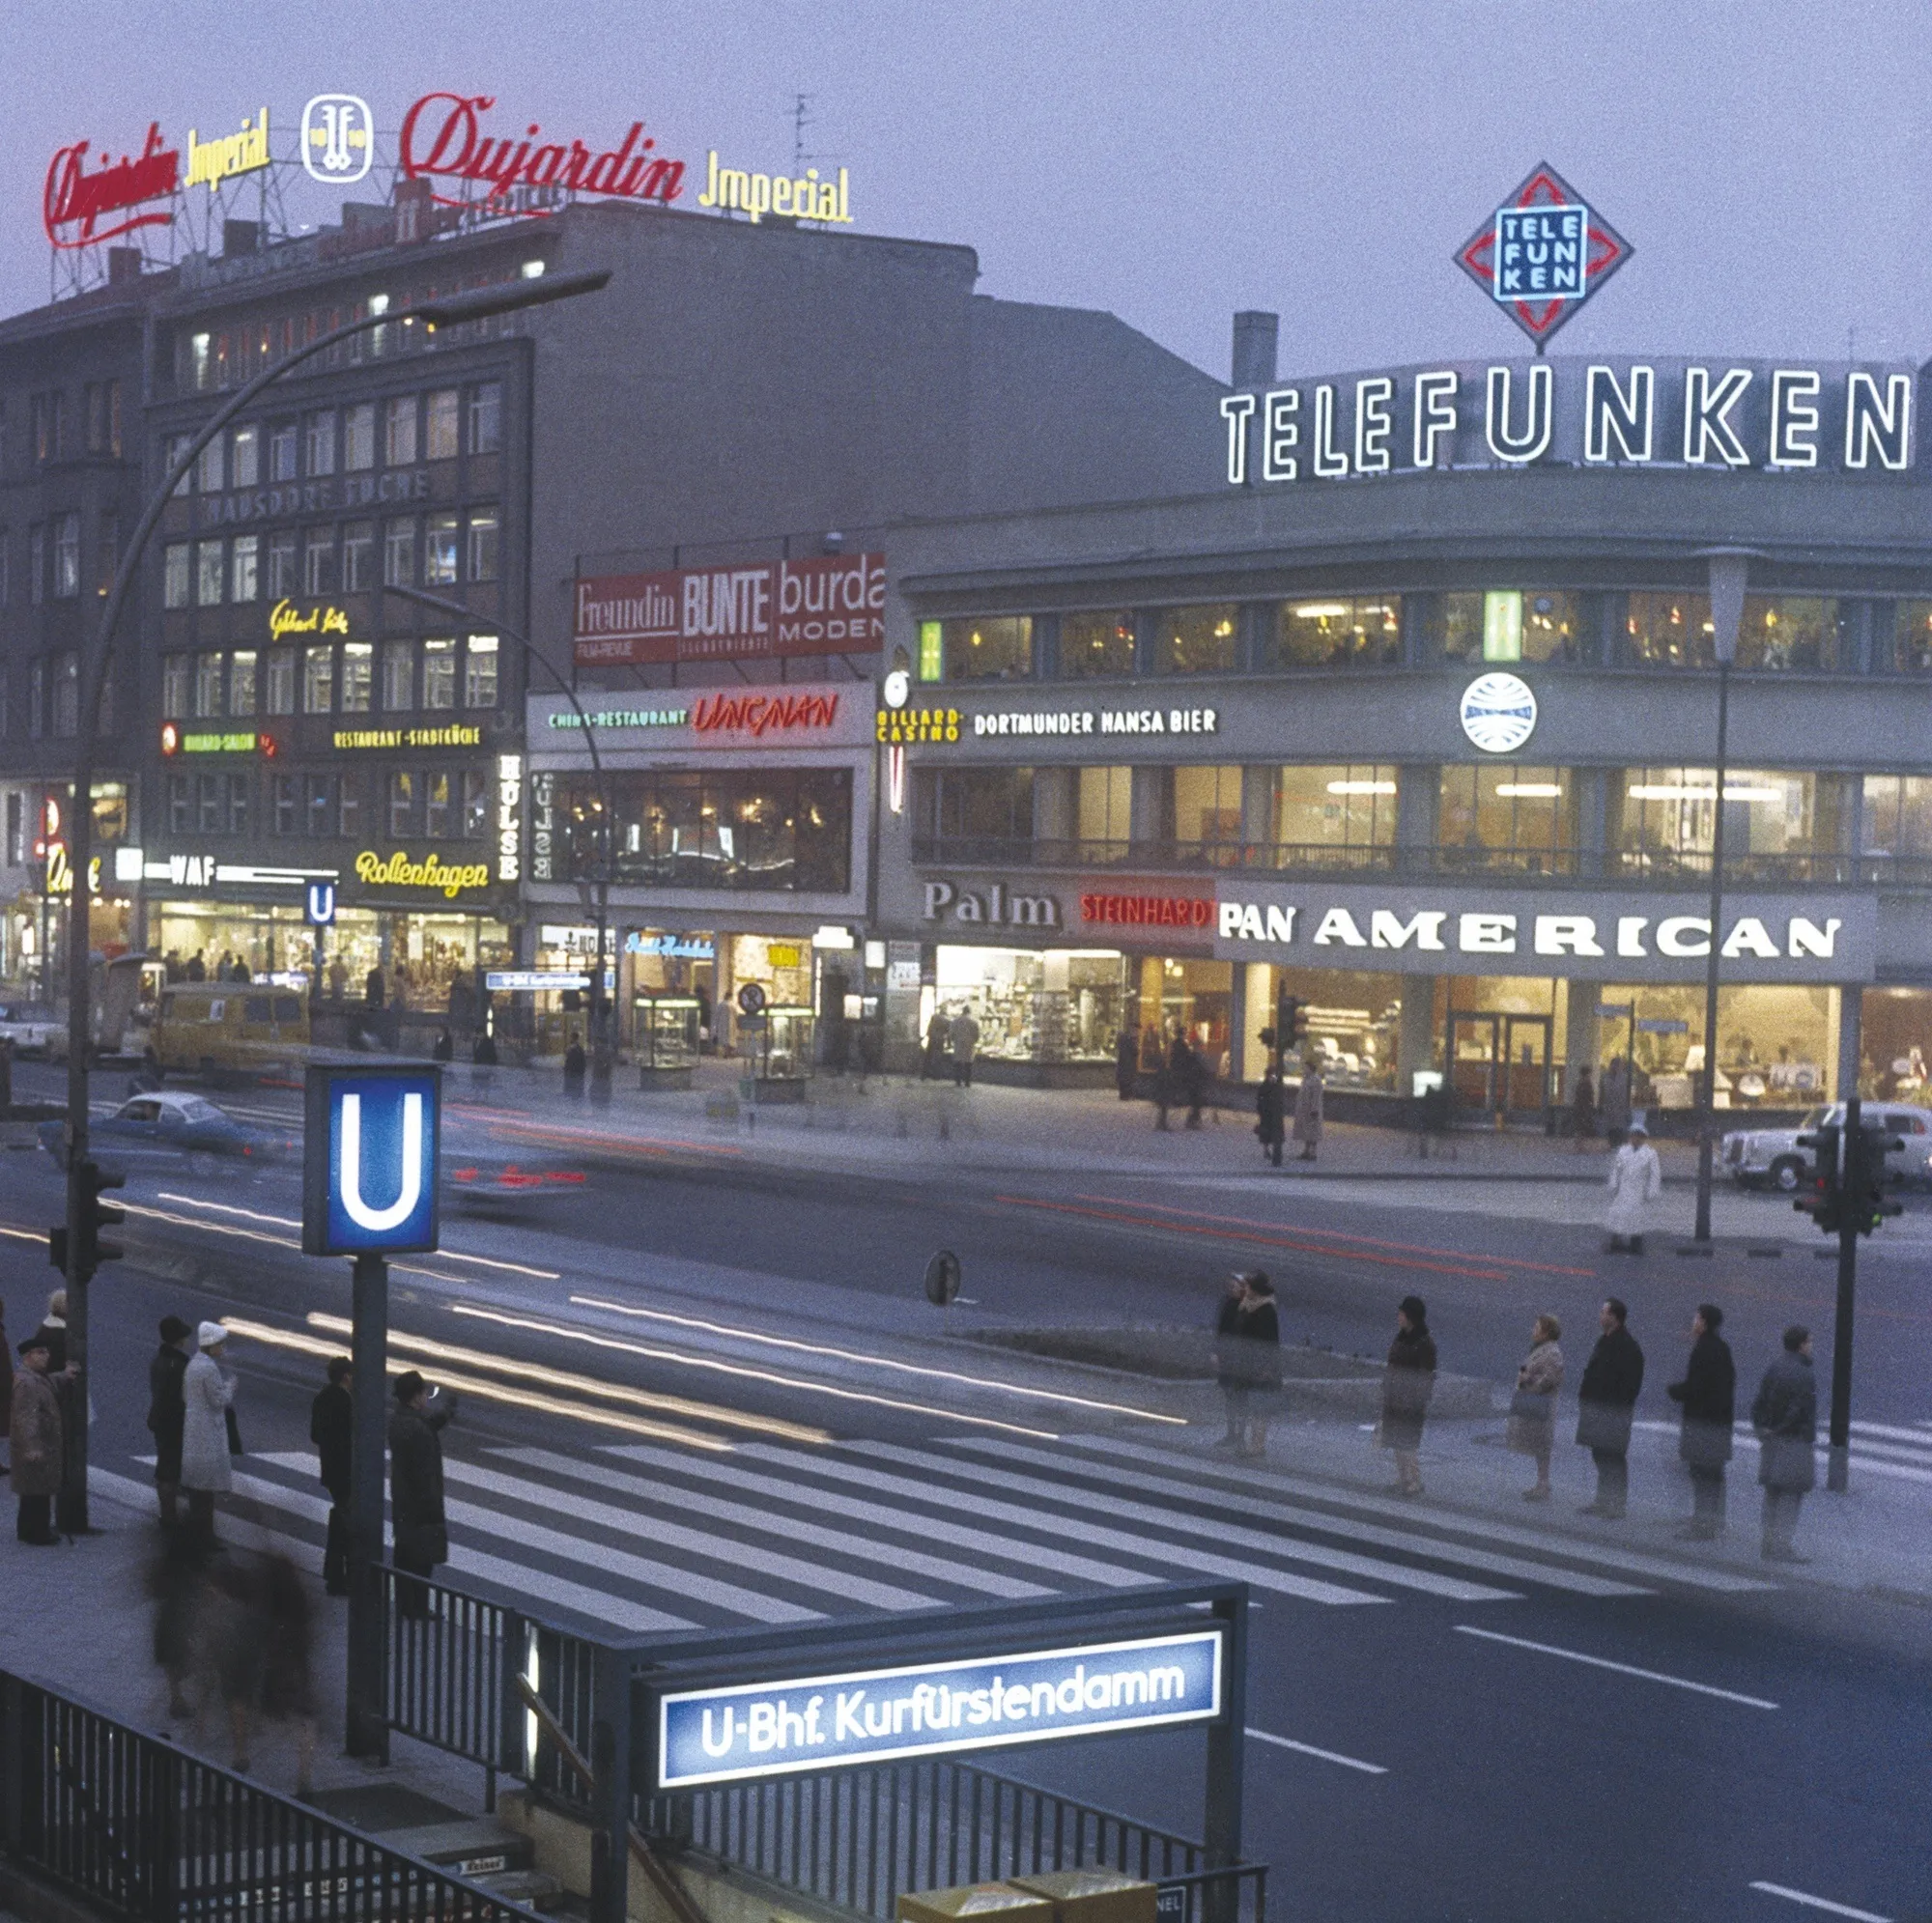 Grande rue commerçante de Berlin-Ouest, 1964, photographie